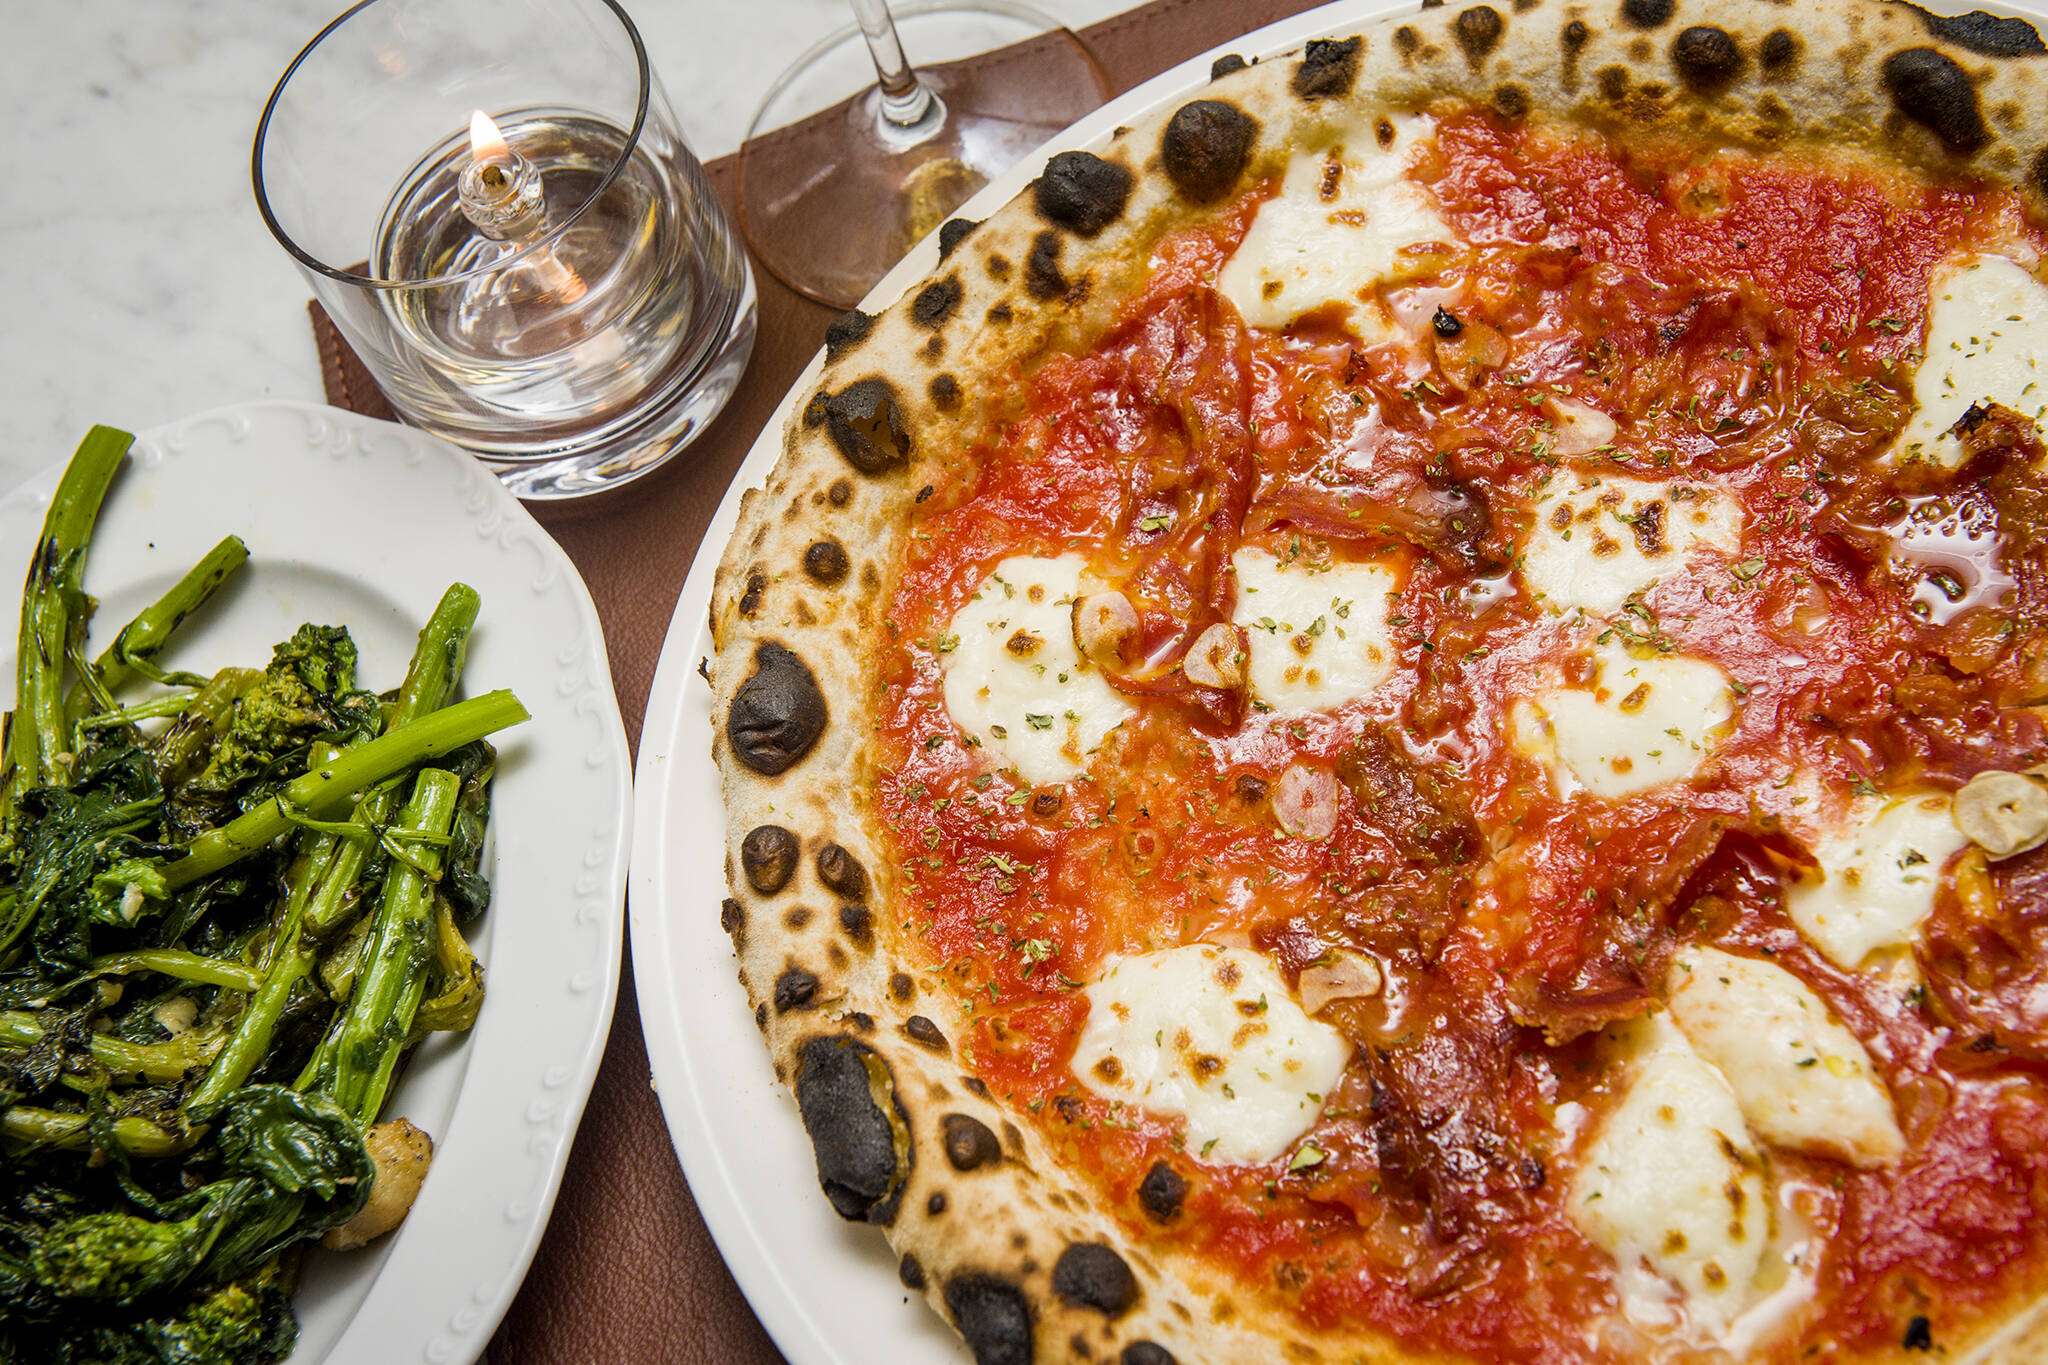 The Best Italian Restaurants in Toronto
